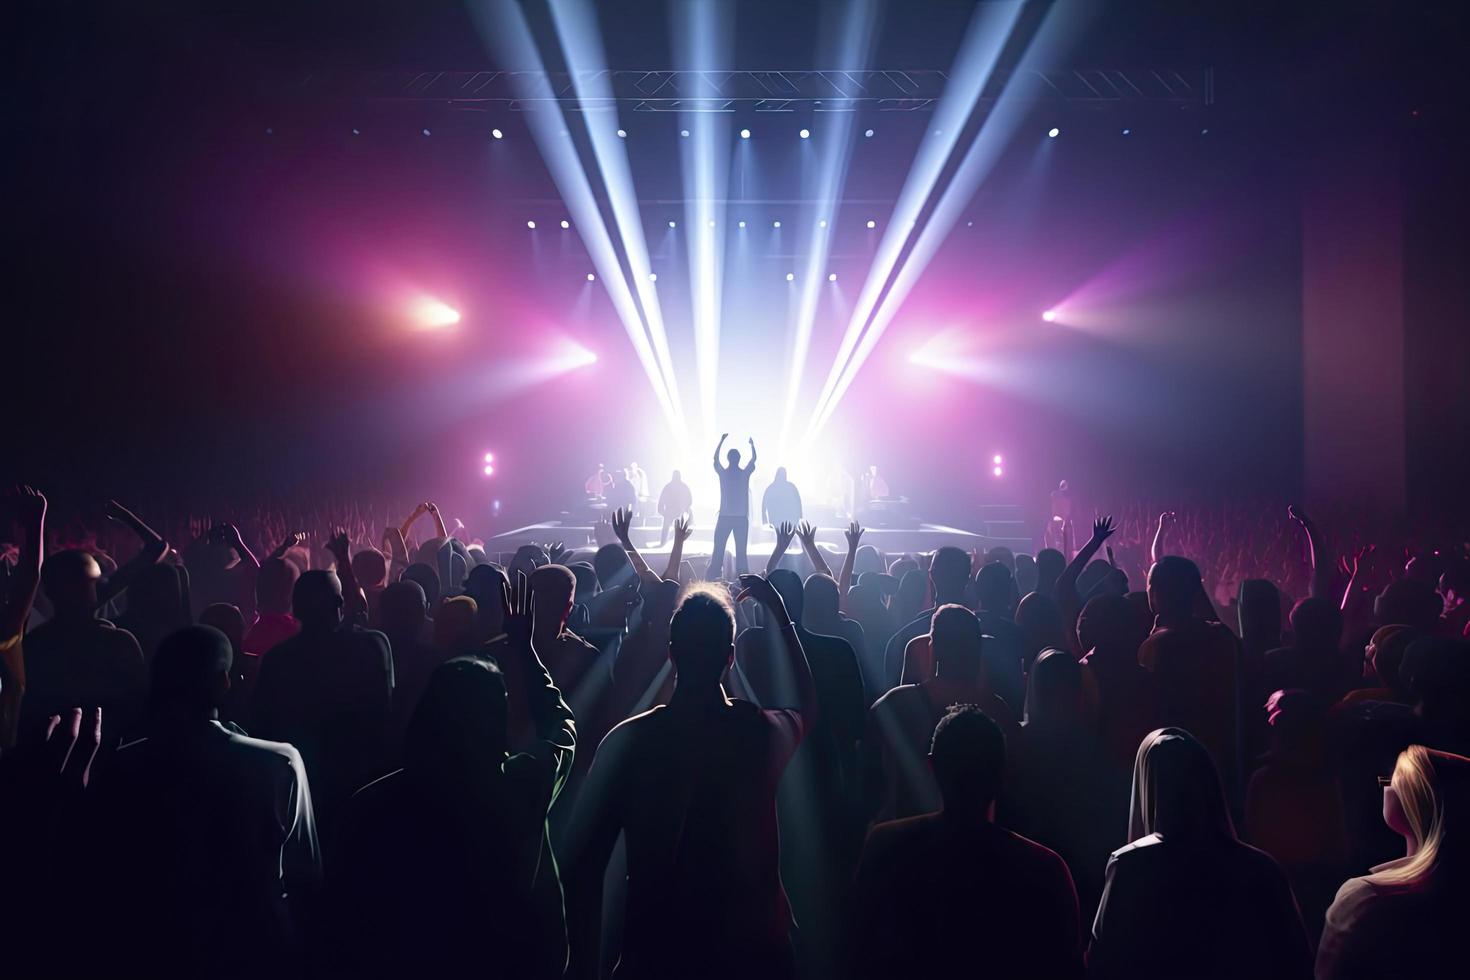 Zukunft von überfüllt Konzert Halle auf Bühne mit Szene Bühne Beleuchtung, Felsen Show Performance foto